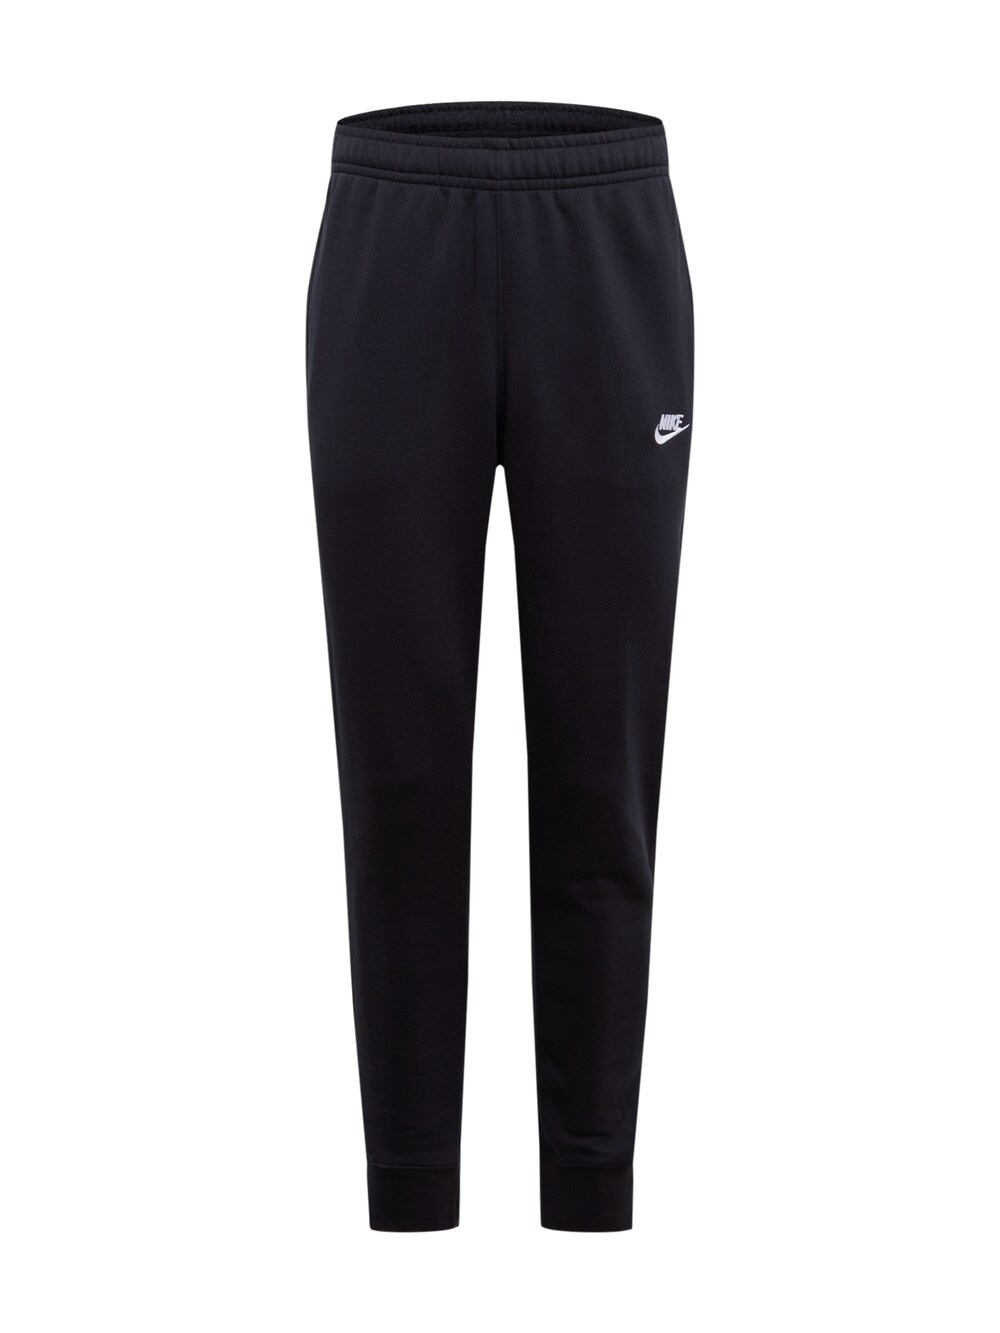 Зауженные брюки Nike Sportswear Club Fleece, черный